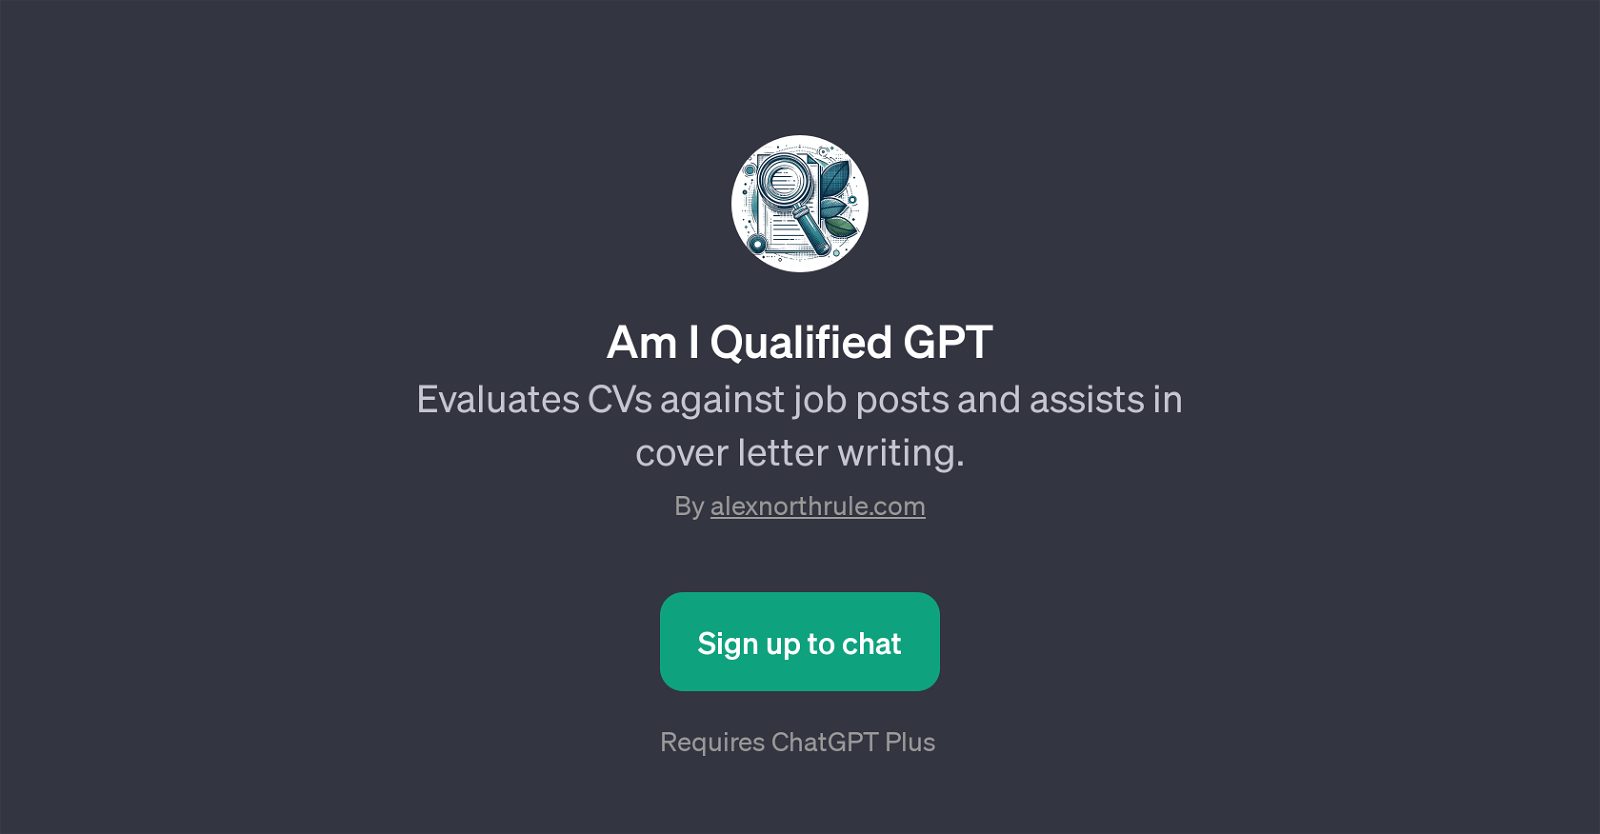 Am I Qualified GPT website